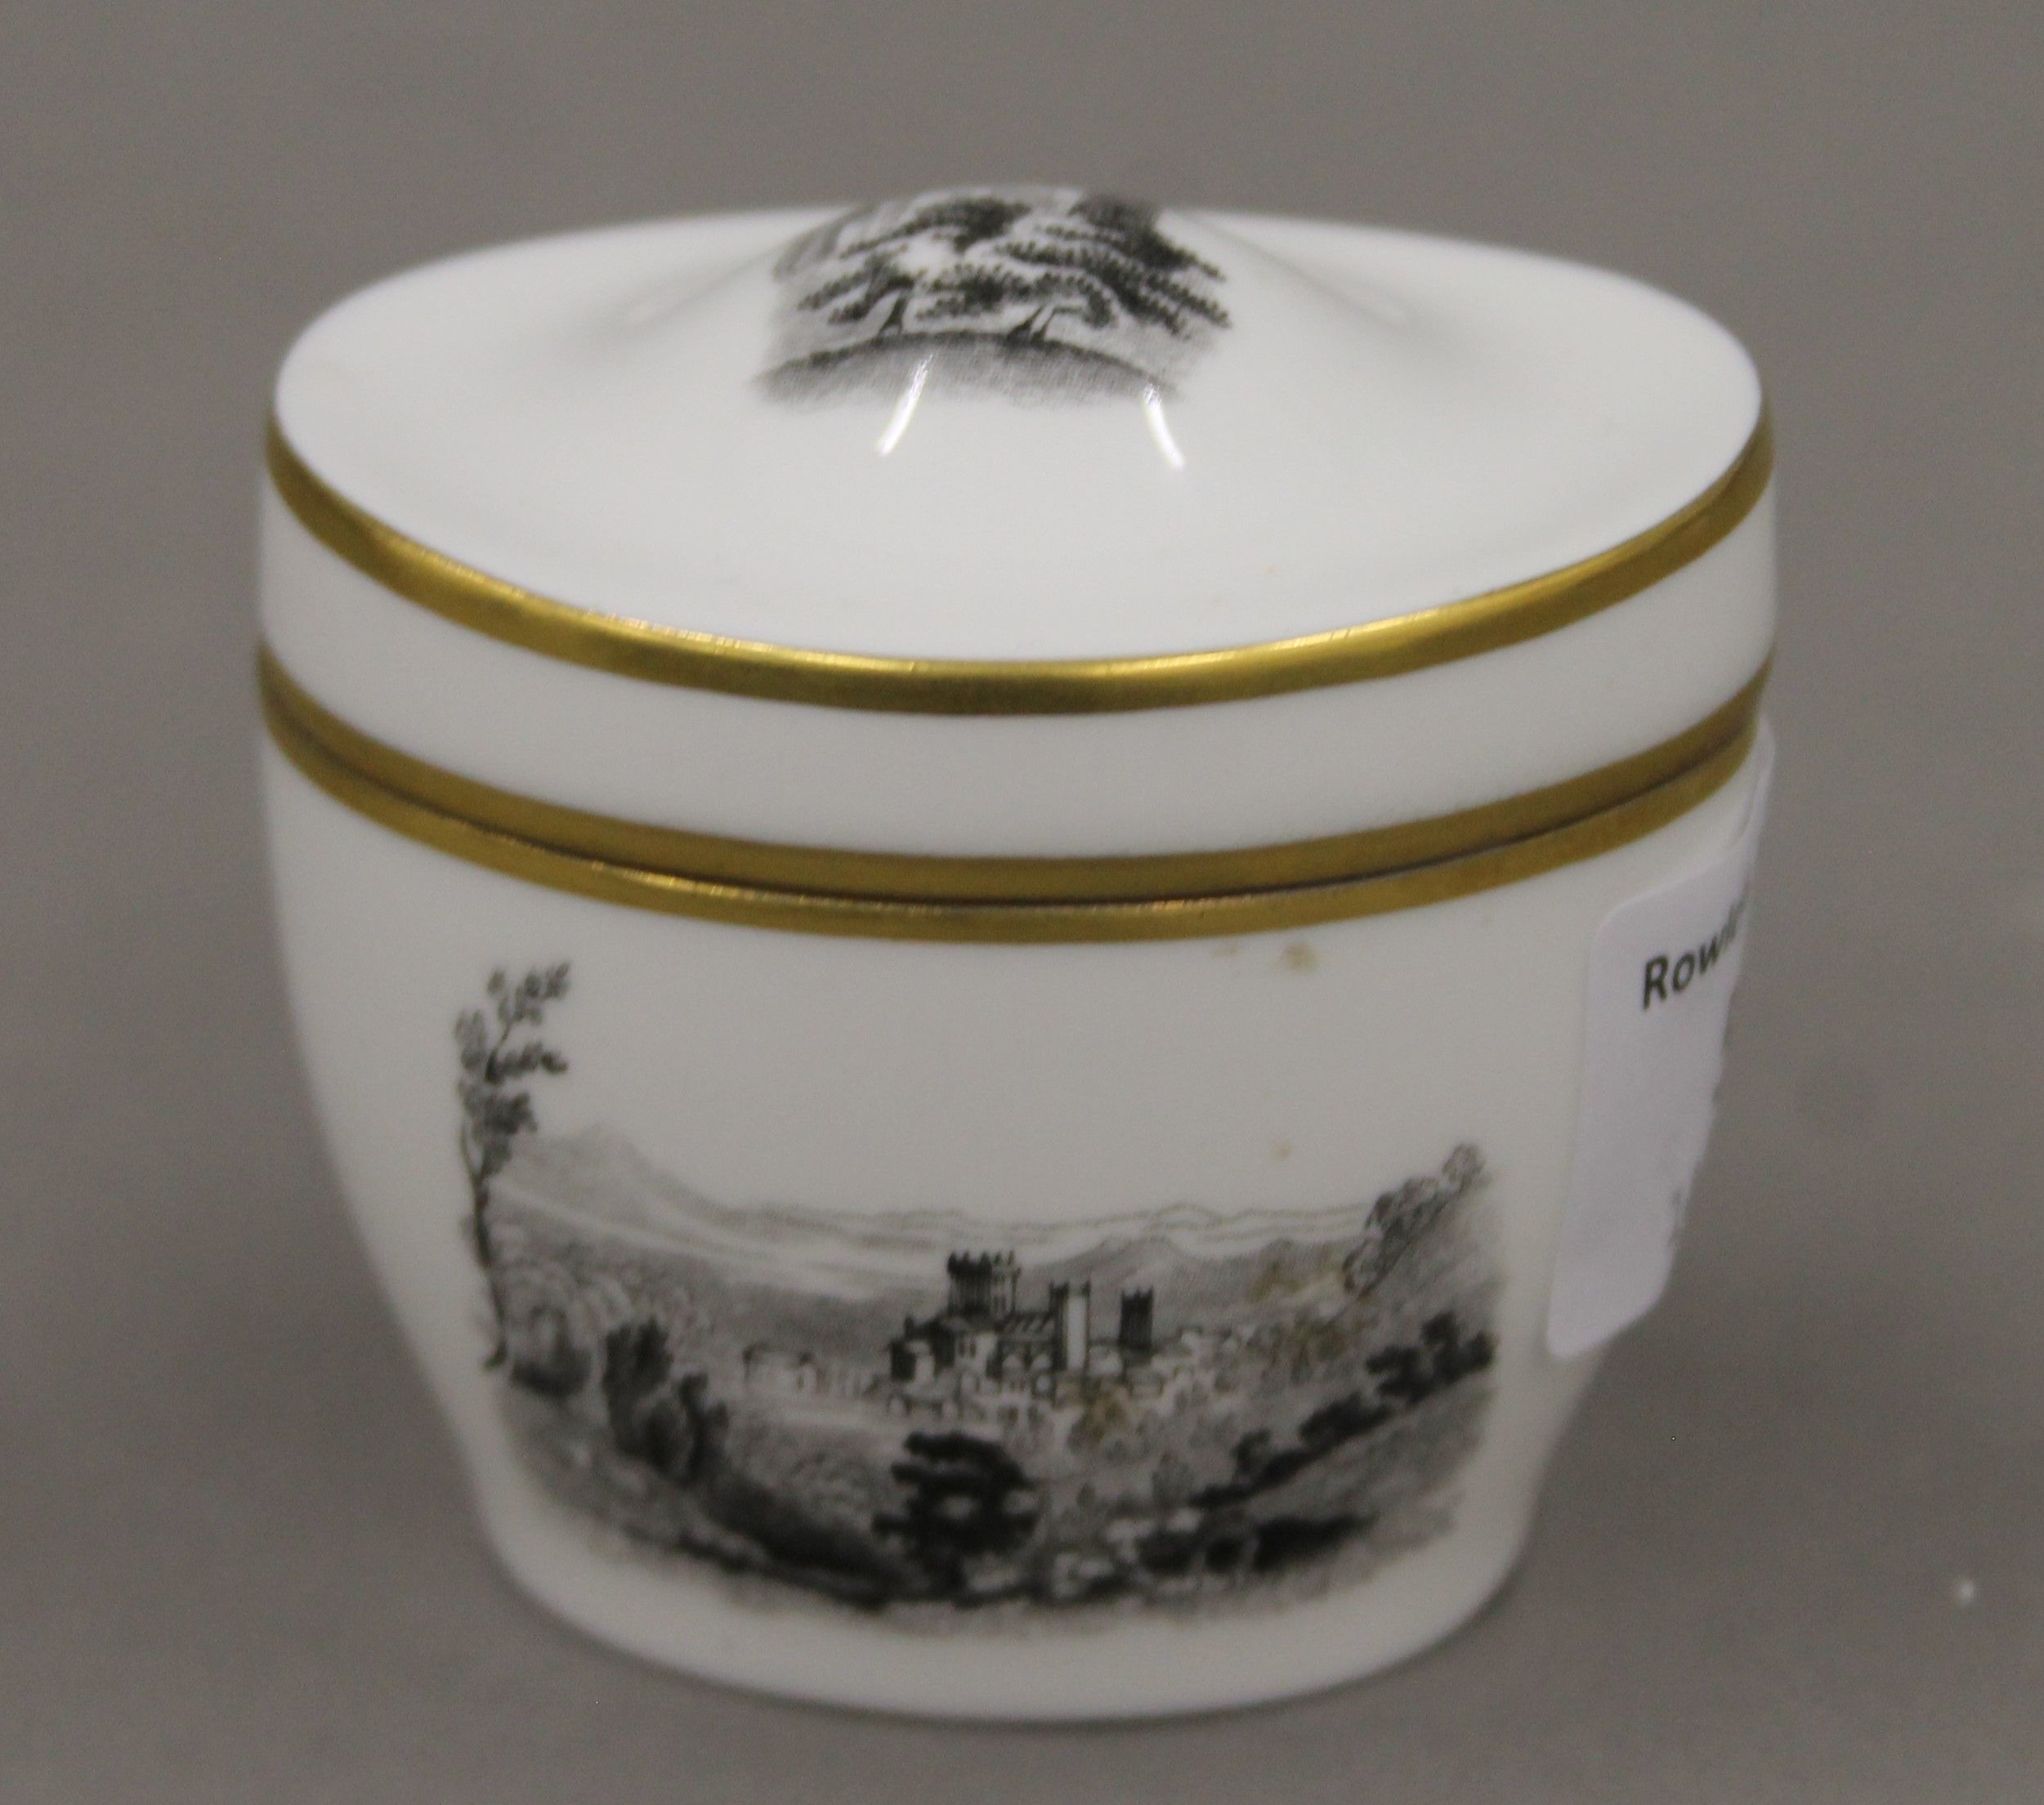 A Royal Worcester porcelain box. 6 cm wide.